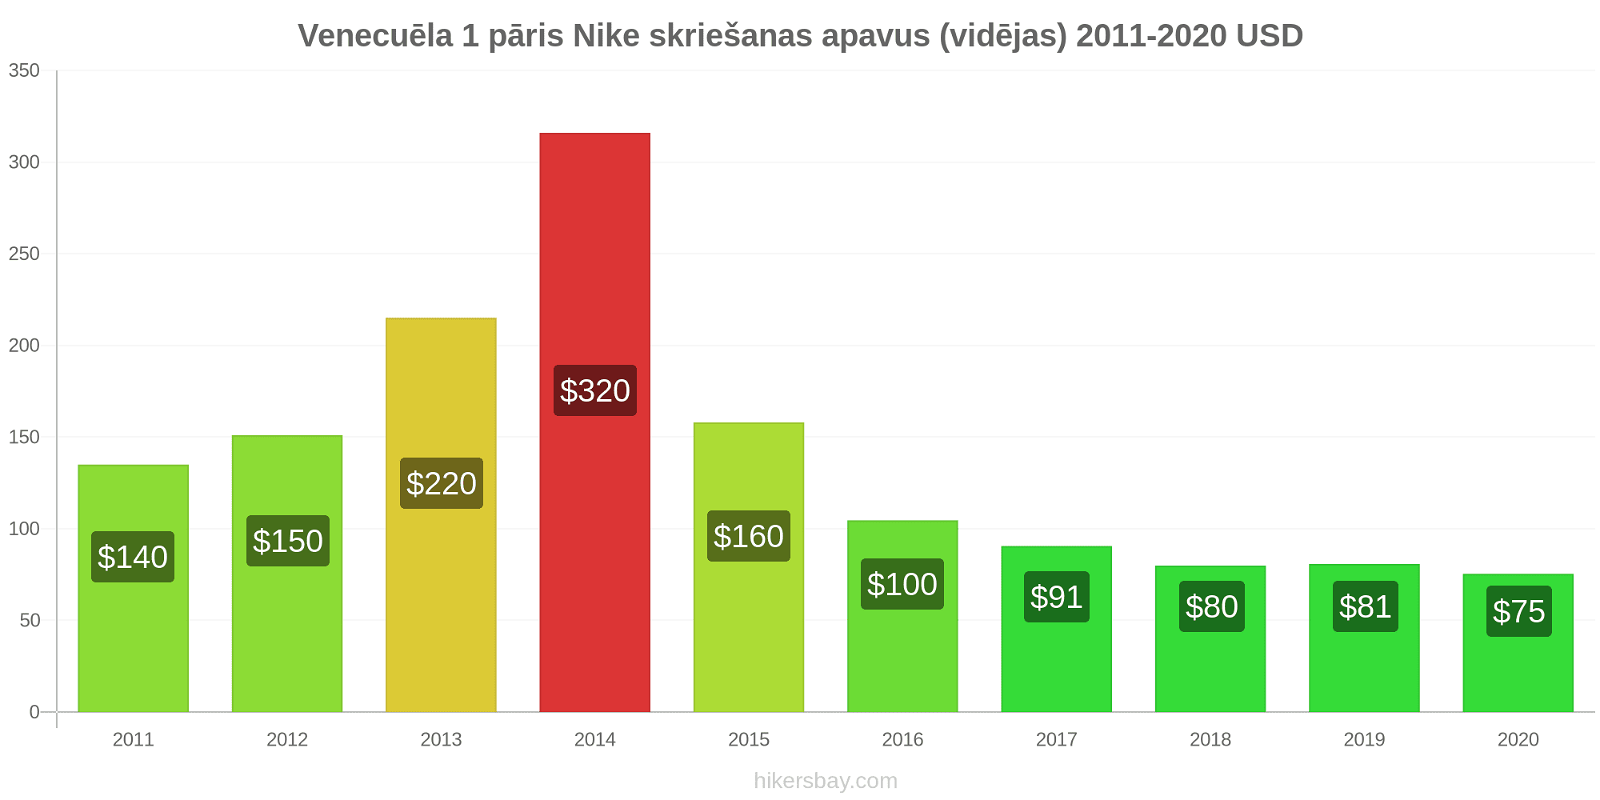 Venecuēla cenu izmaiņas 1 pāris Nike skriešanas apavus (vidējas) hikersbay.com